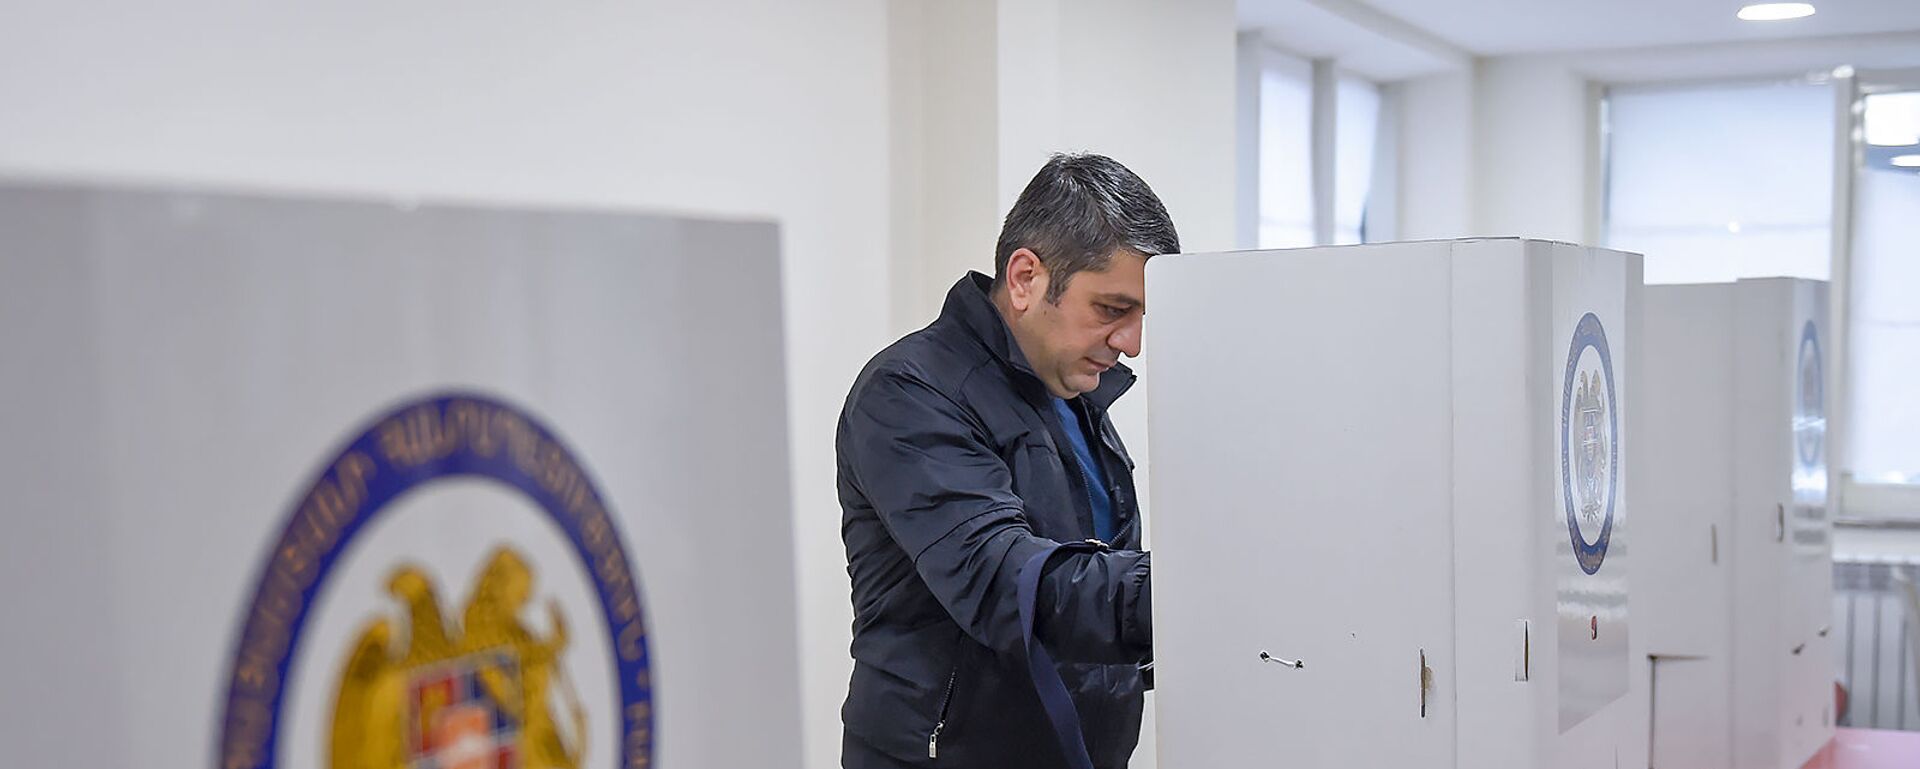 Избиратель на участке  - Sputnik Армения, 1920, 05.12.2021